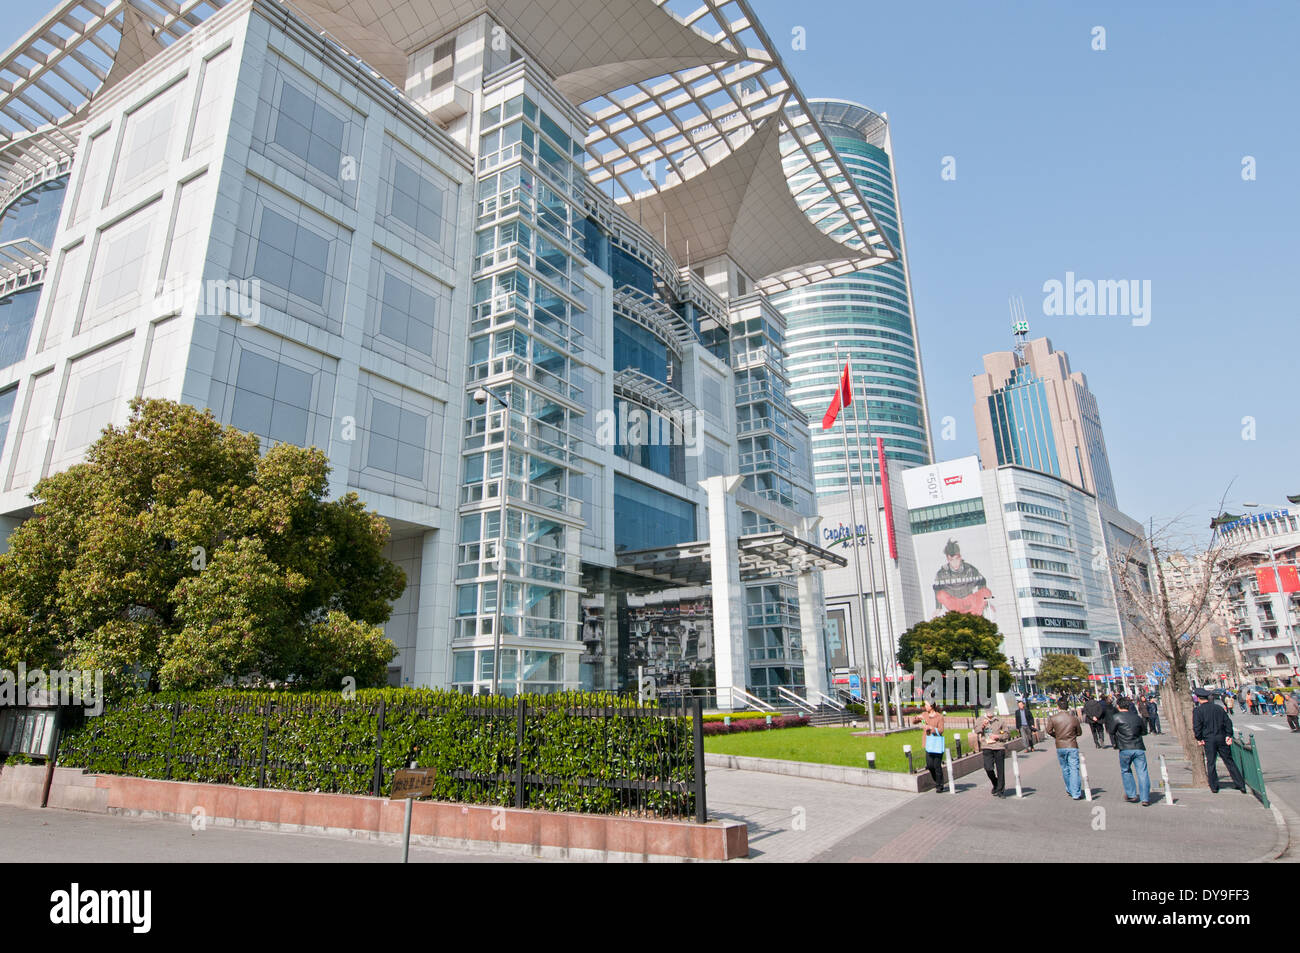 La planification urbaine de Shanghai Exhibition Center situé sur la place du peuple dans le district de Huangpu, Shanghai, Chine Banque D'Images